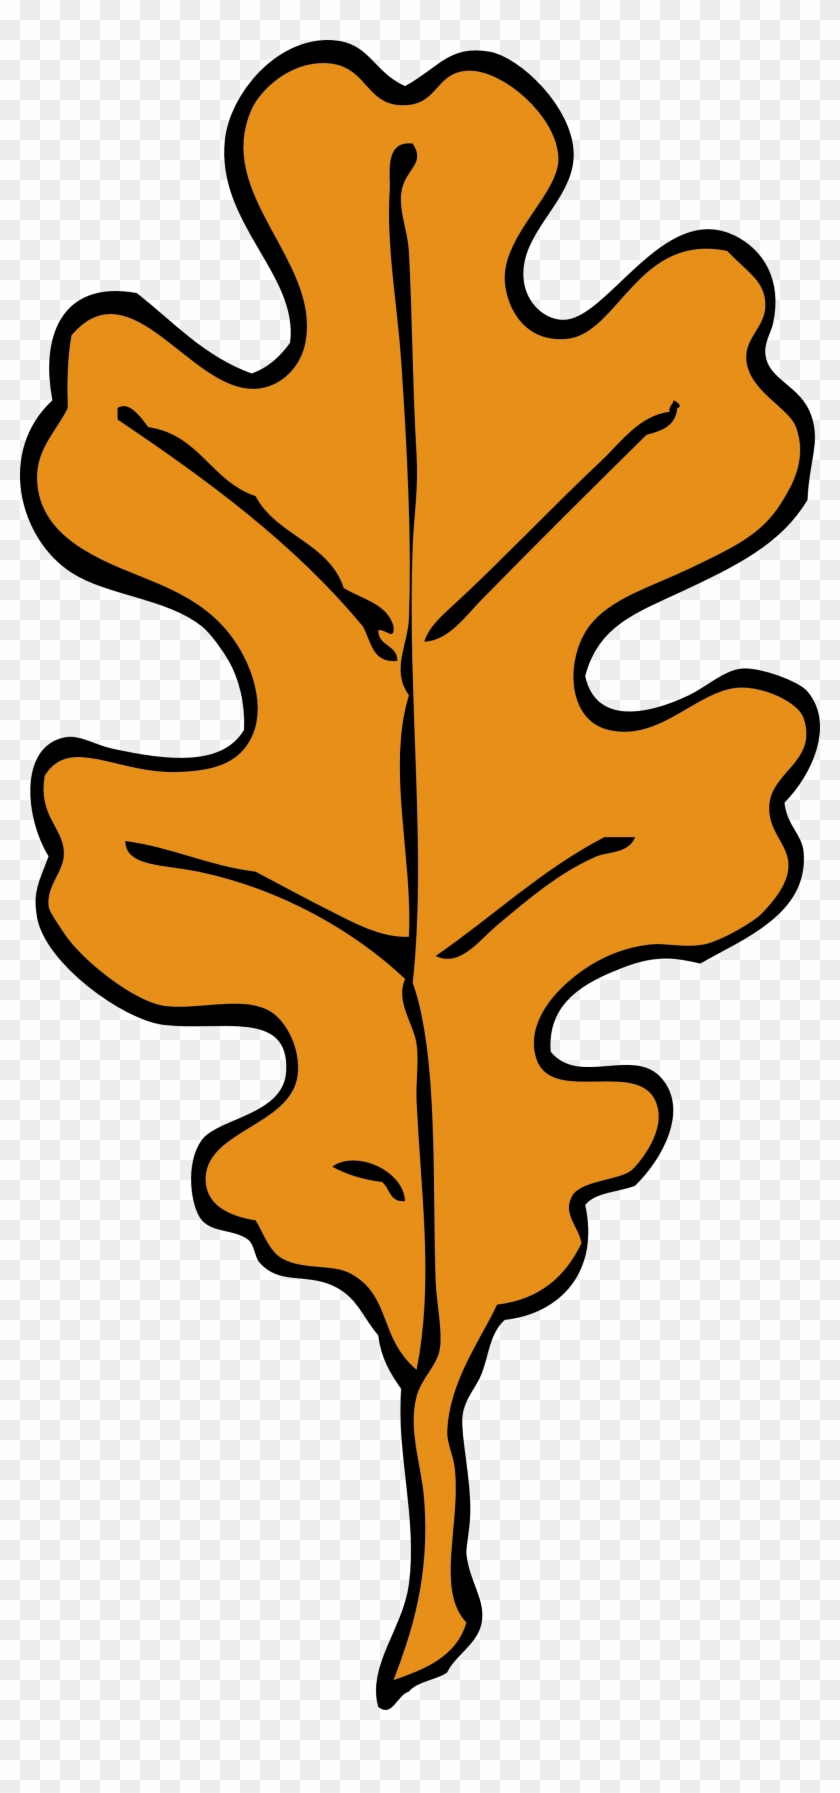 Oak Leaf Clipart - Oak Tree Leaves Cartoon #1612048